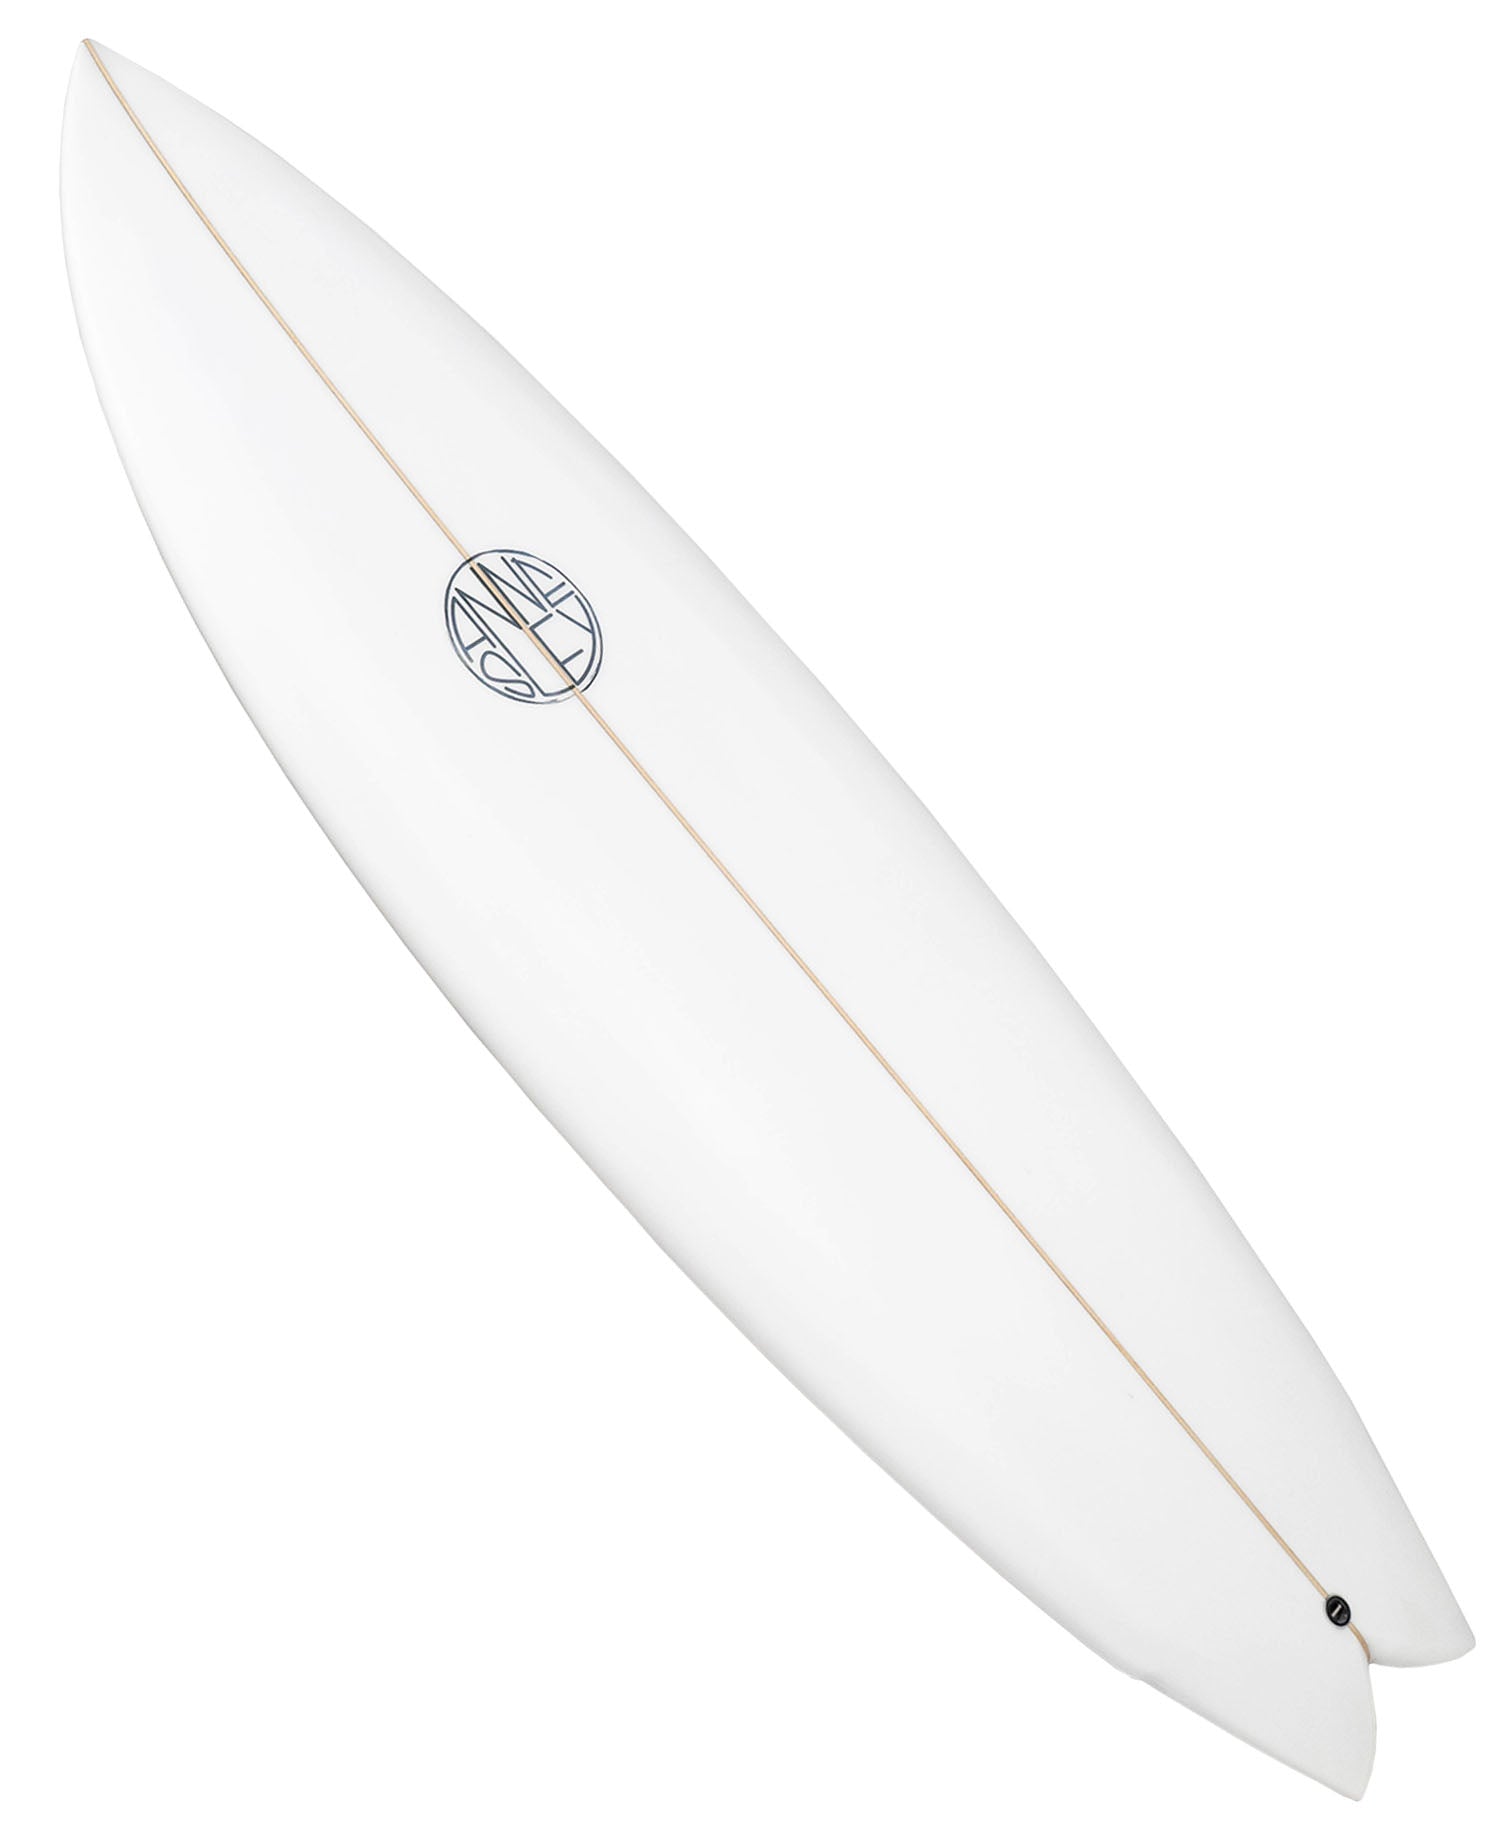 ANNESLEY 'NAKULA' SWALLOW SURFBOARD